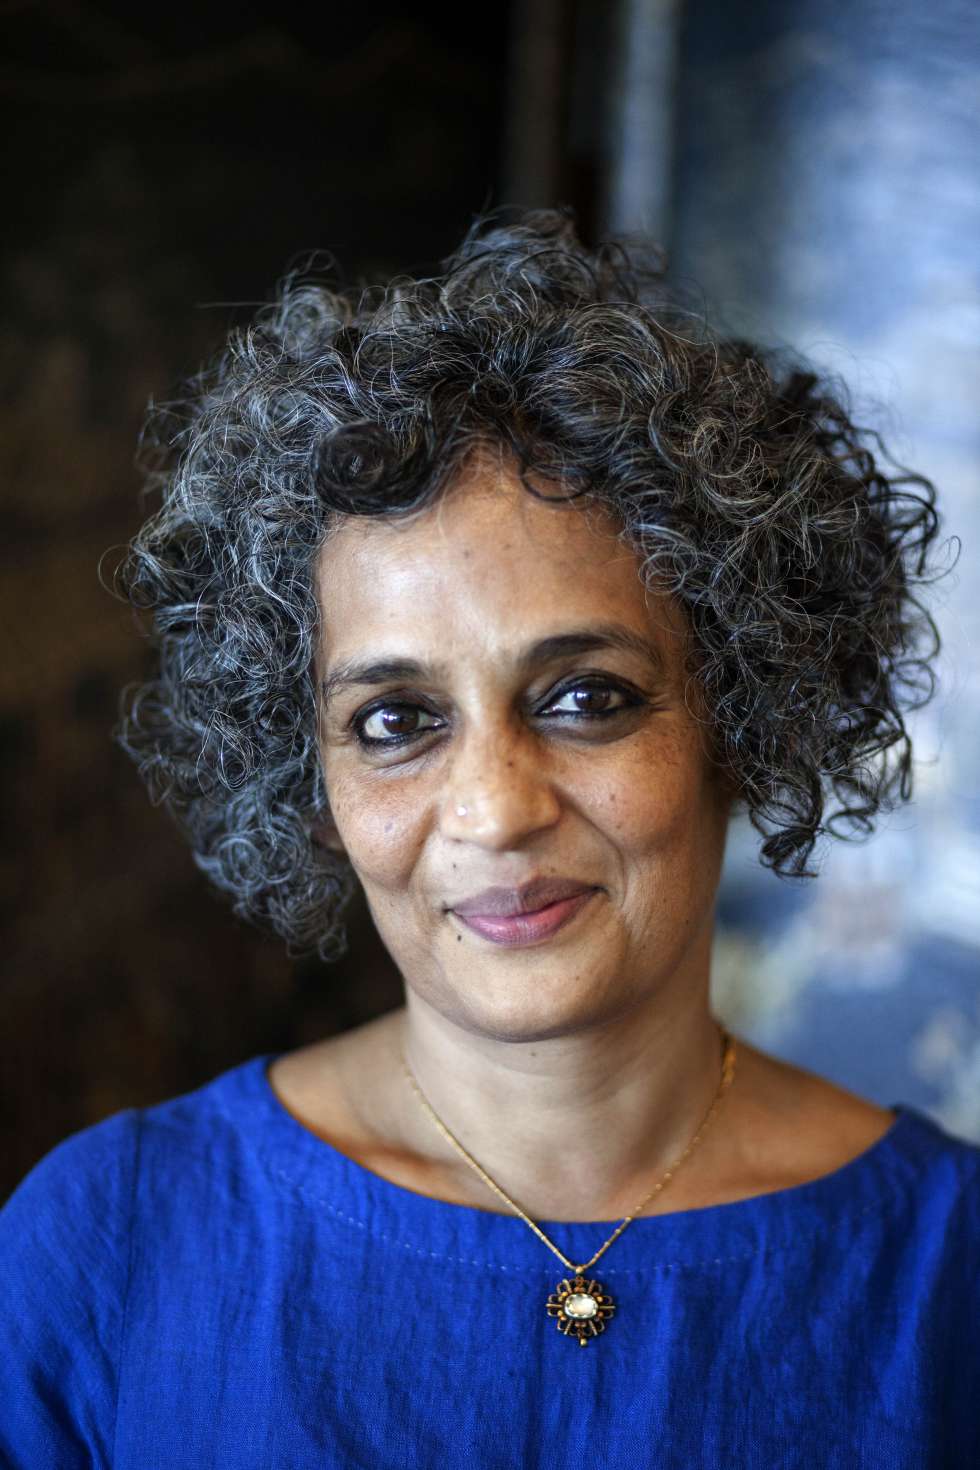 La escritora Arundhati Roy, en Cascais.